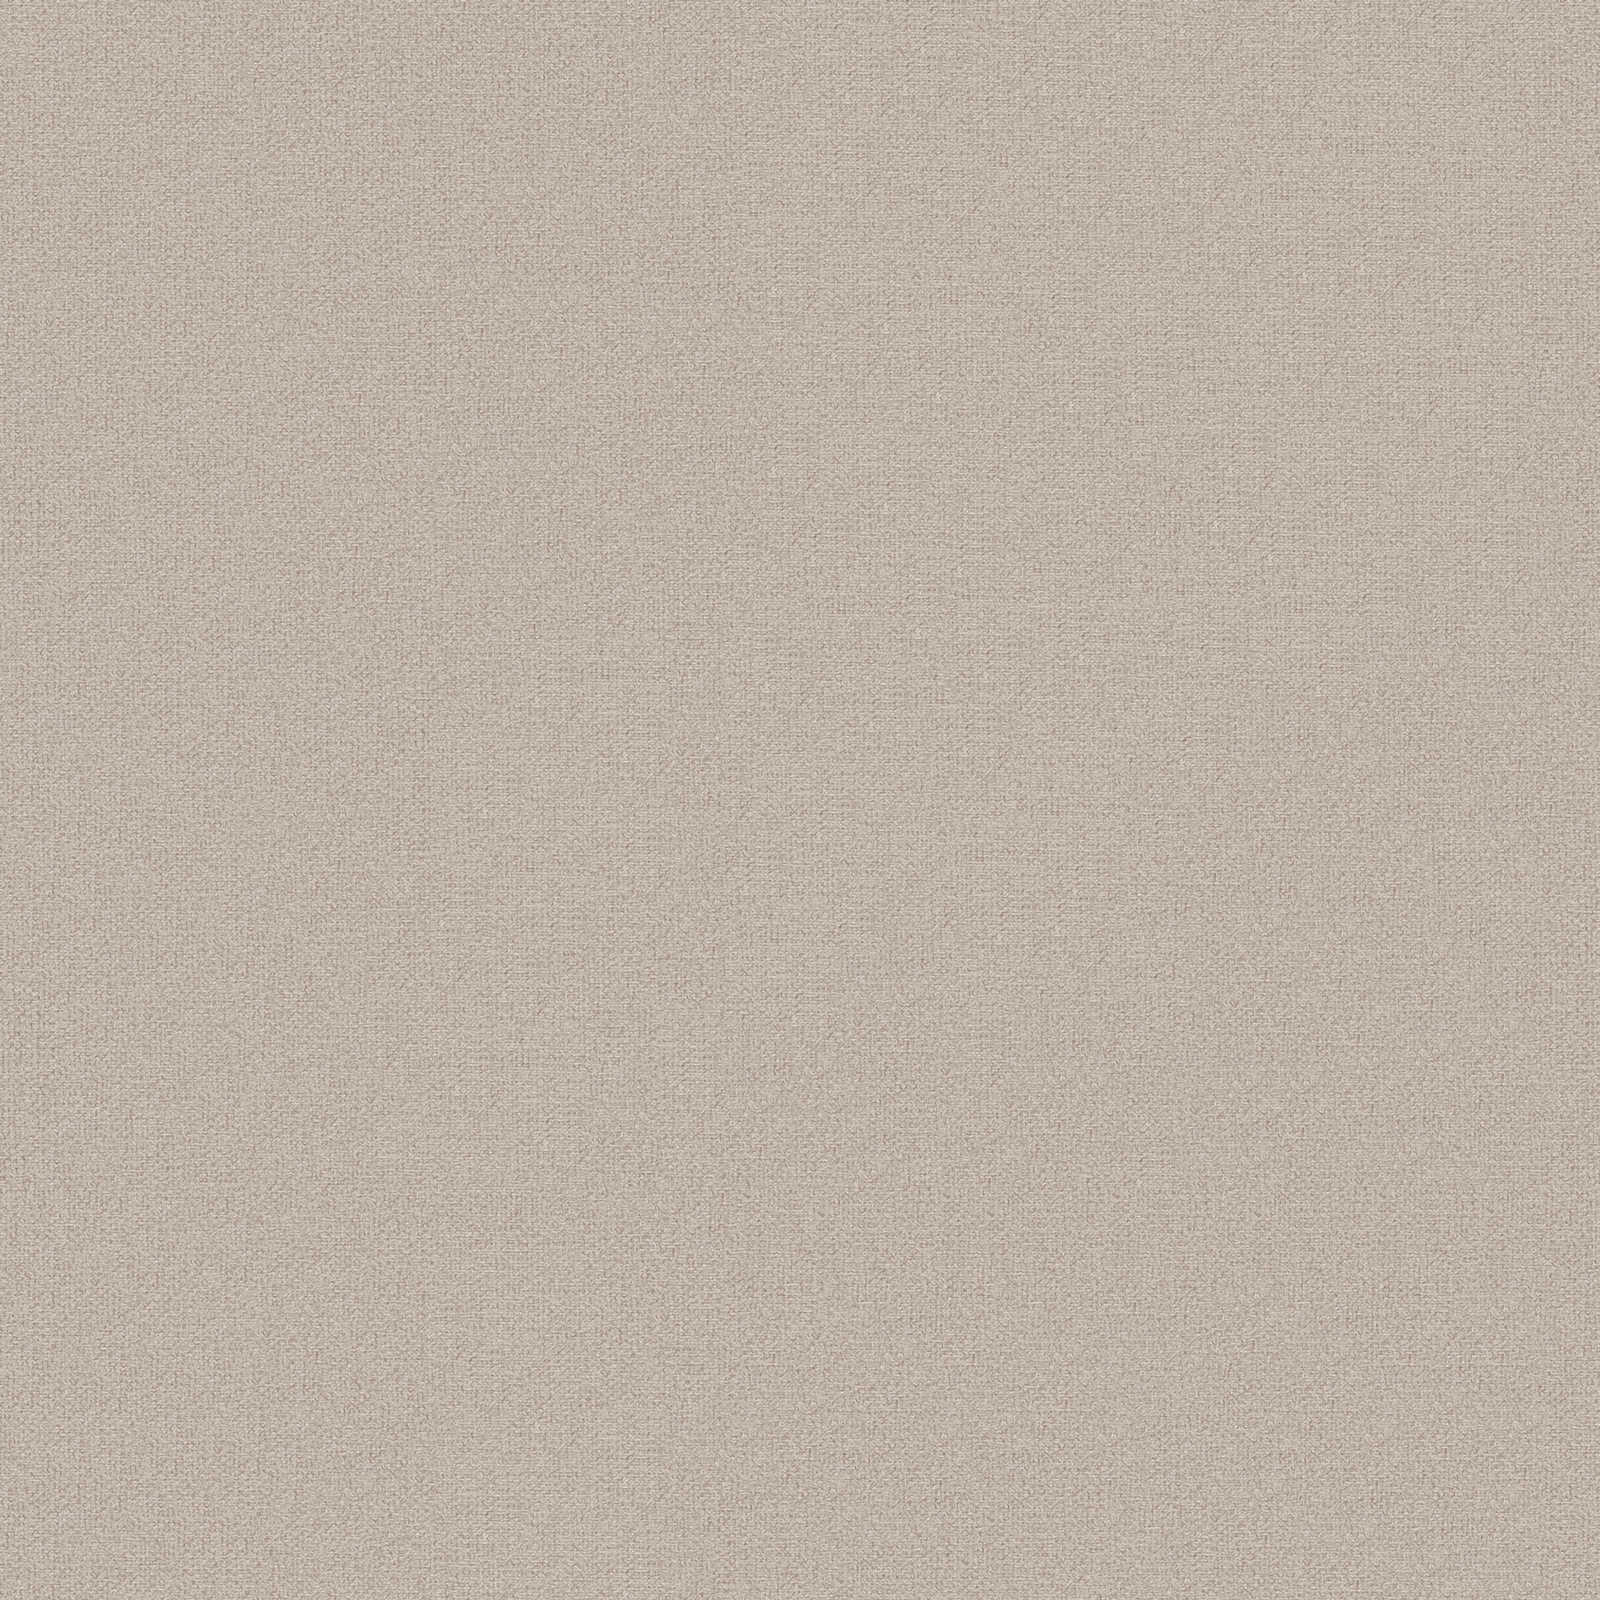 Papel pintado unitario con aspecto de lino sin PVC - marrón, beige
